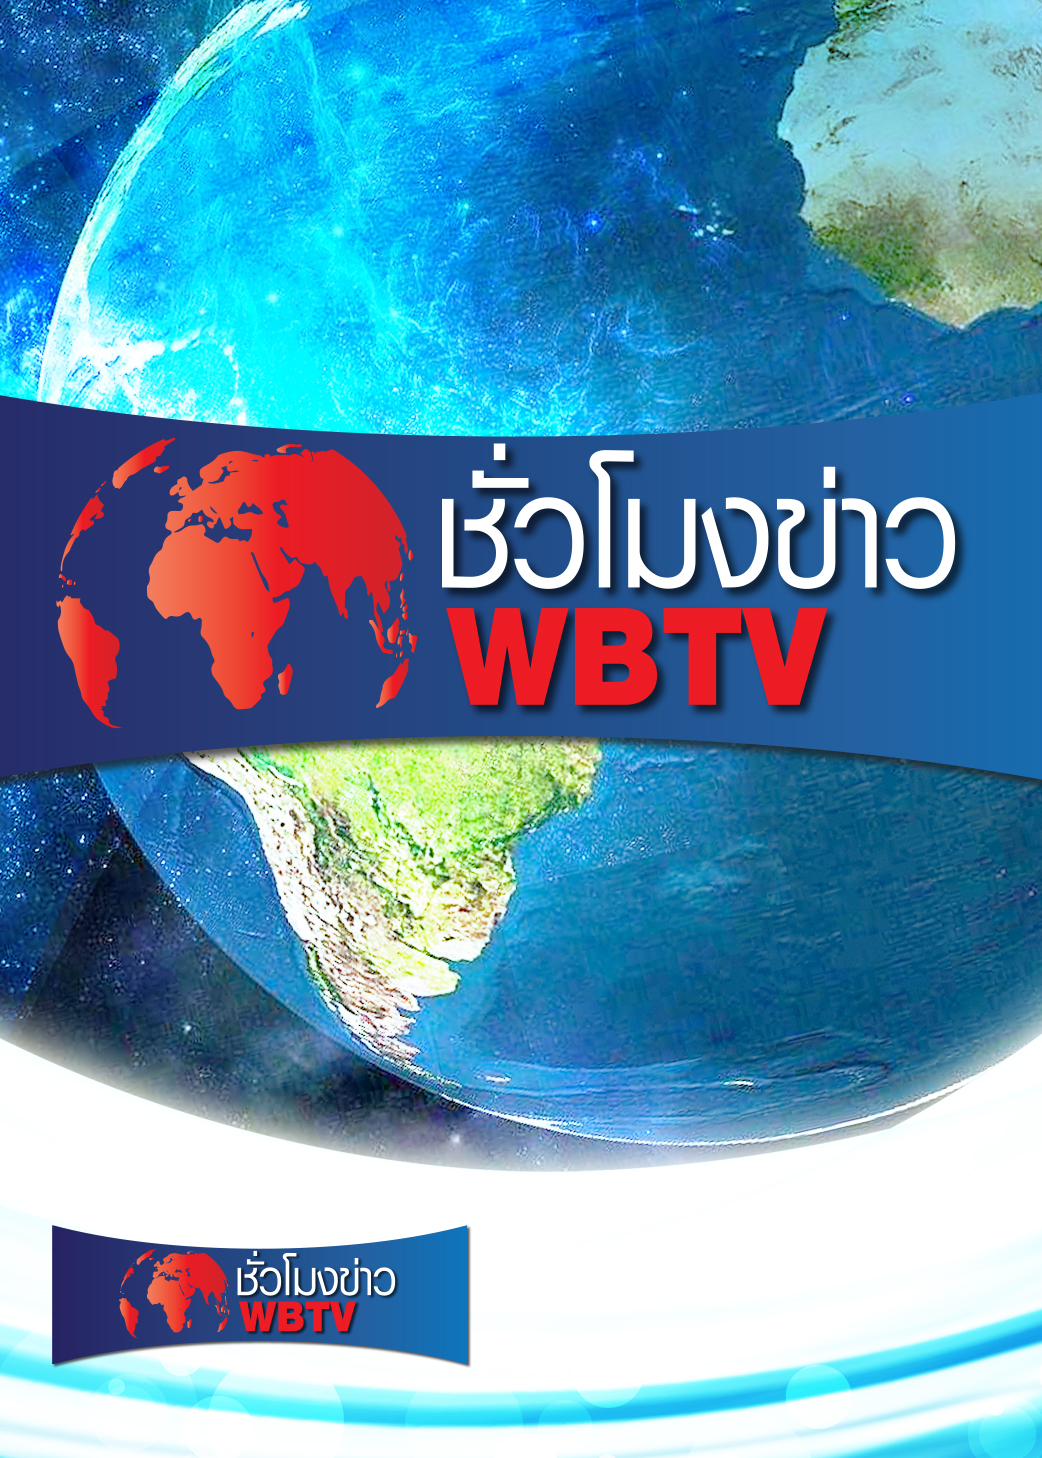 ชั่วโมงข่าว WBTV | ออกอากาศวันที่ 3 ก.ย. 64